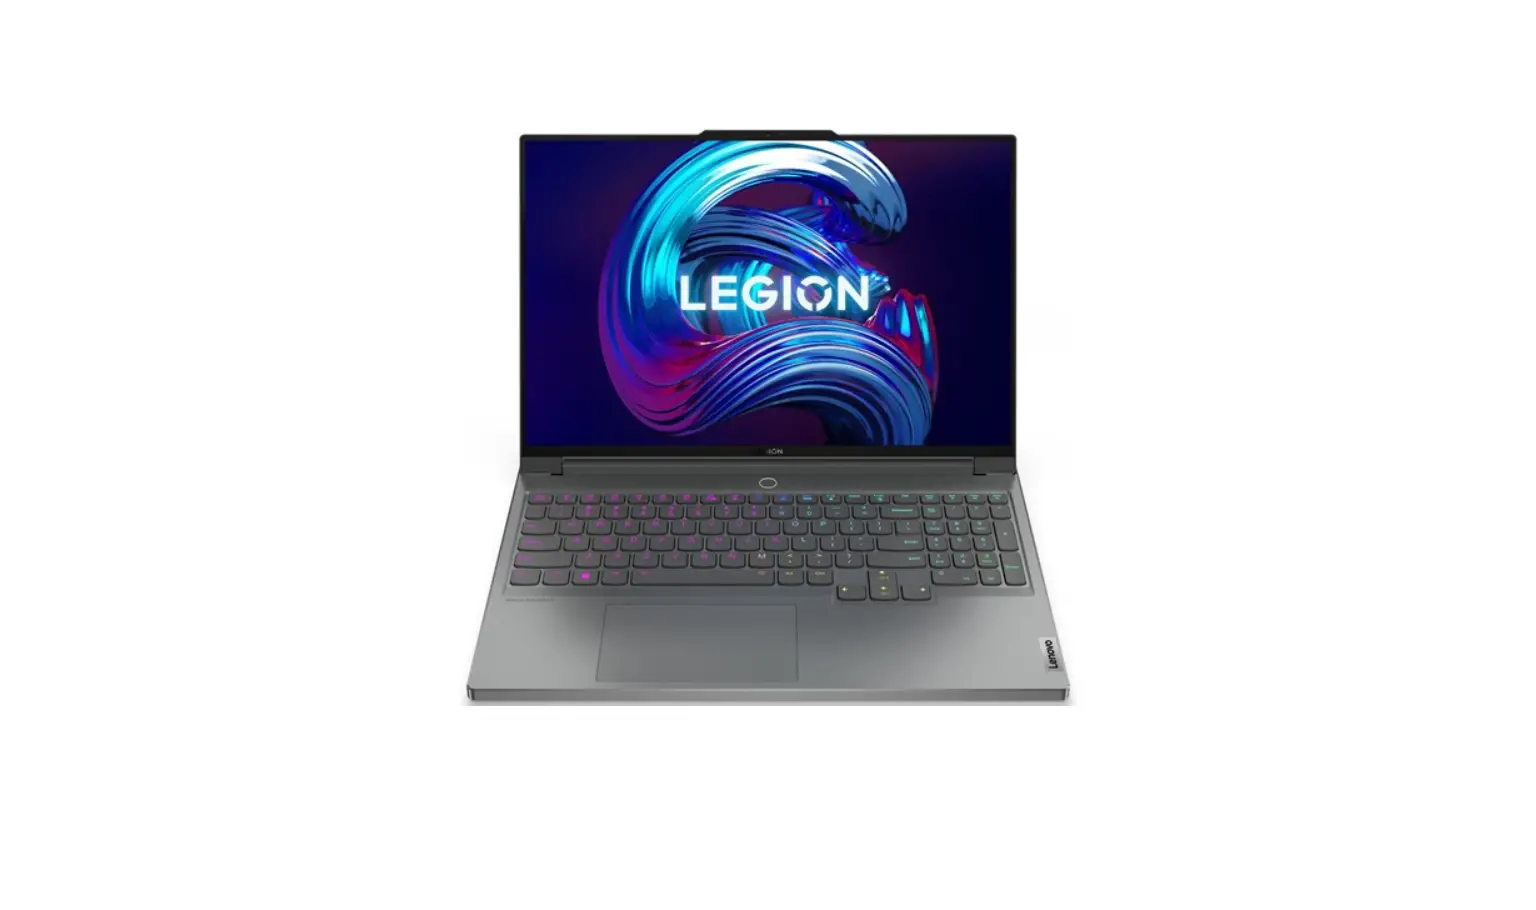 82TD000XUK Legion 7 Intel Core i7 32GB RAM Laptop